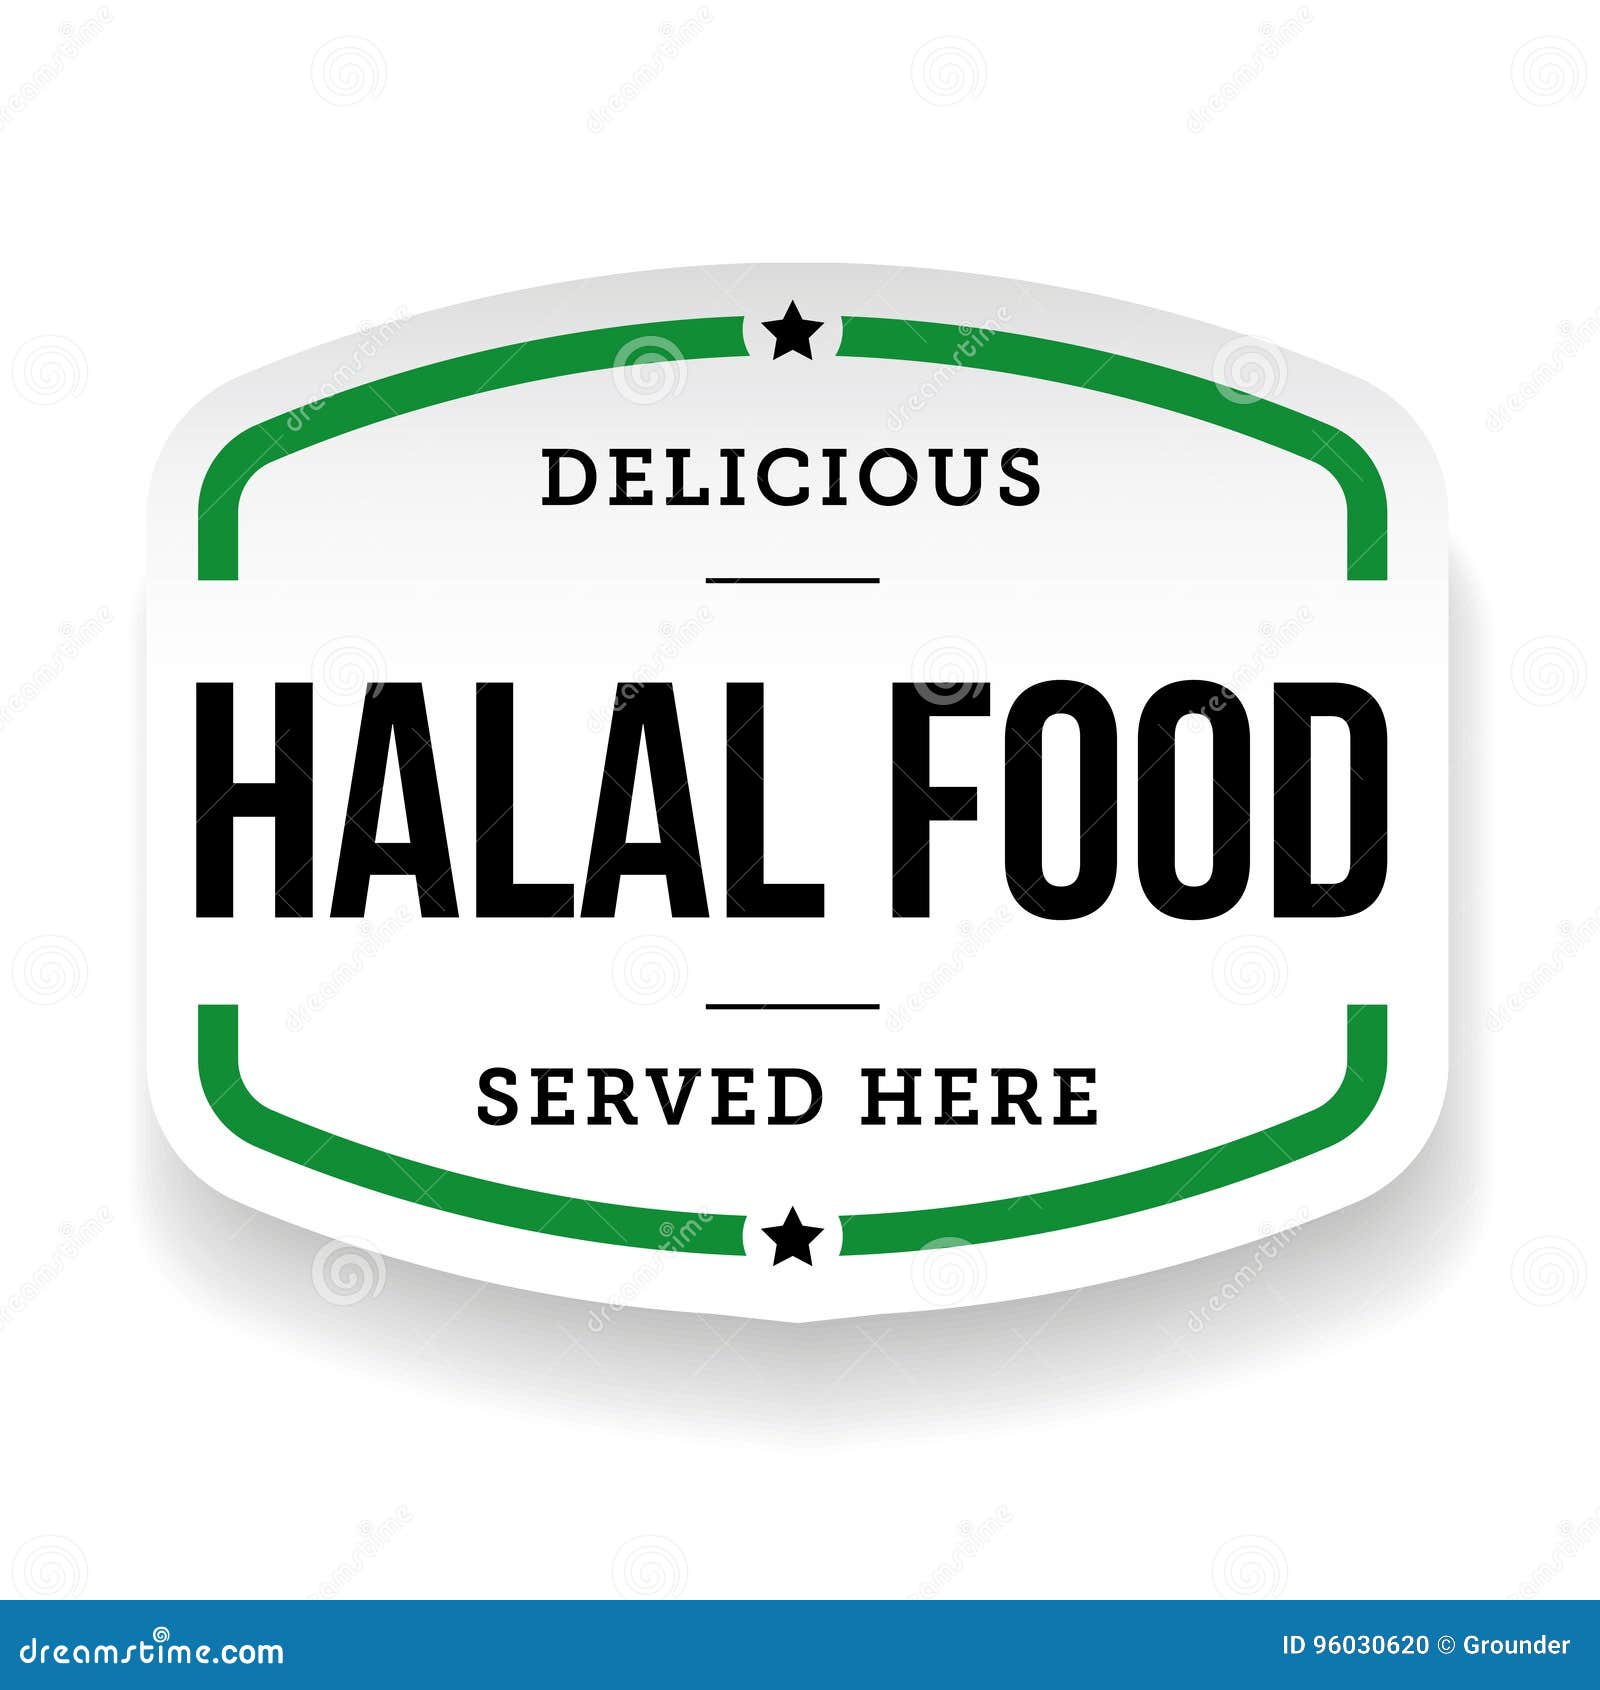 halal food vintage label